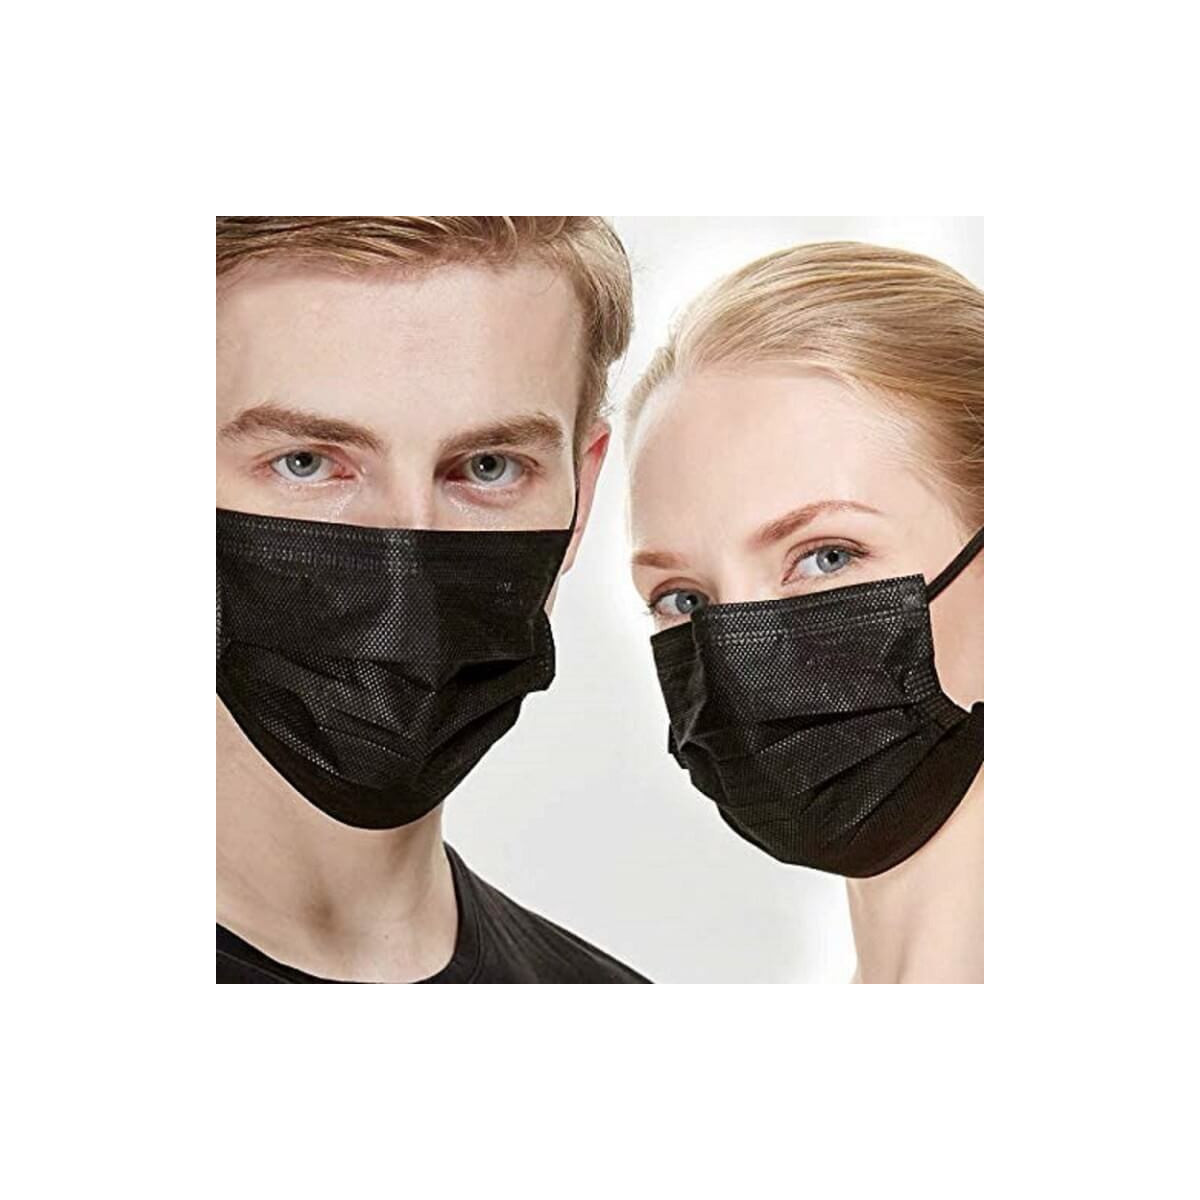 Masque jetable noir : masque chirurgical noir livraison rapide